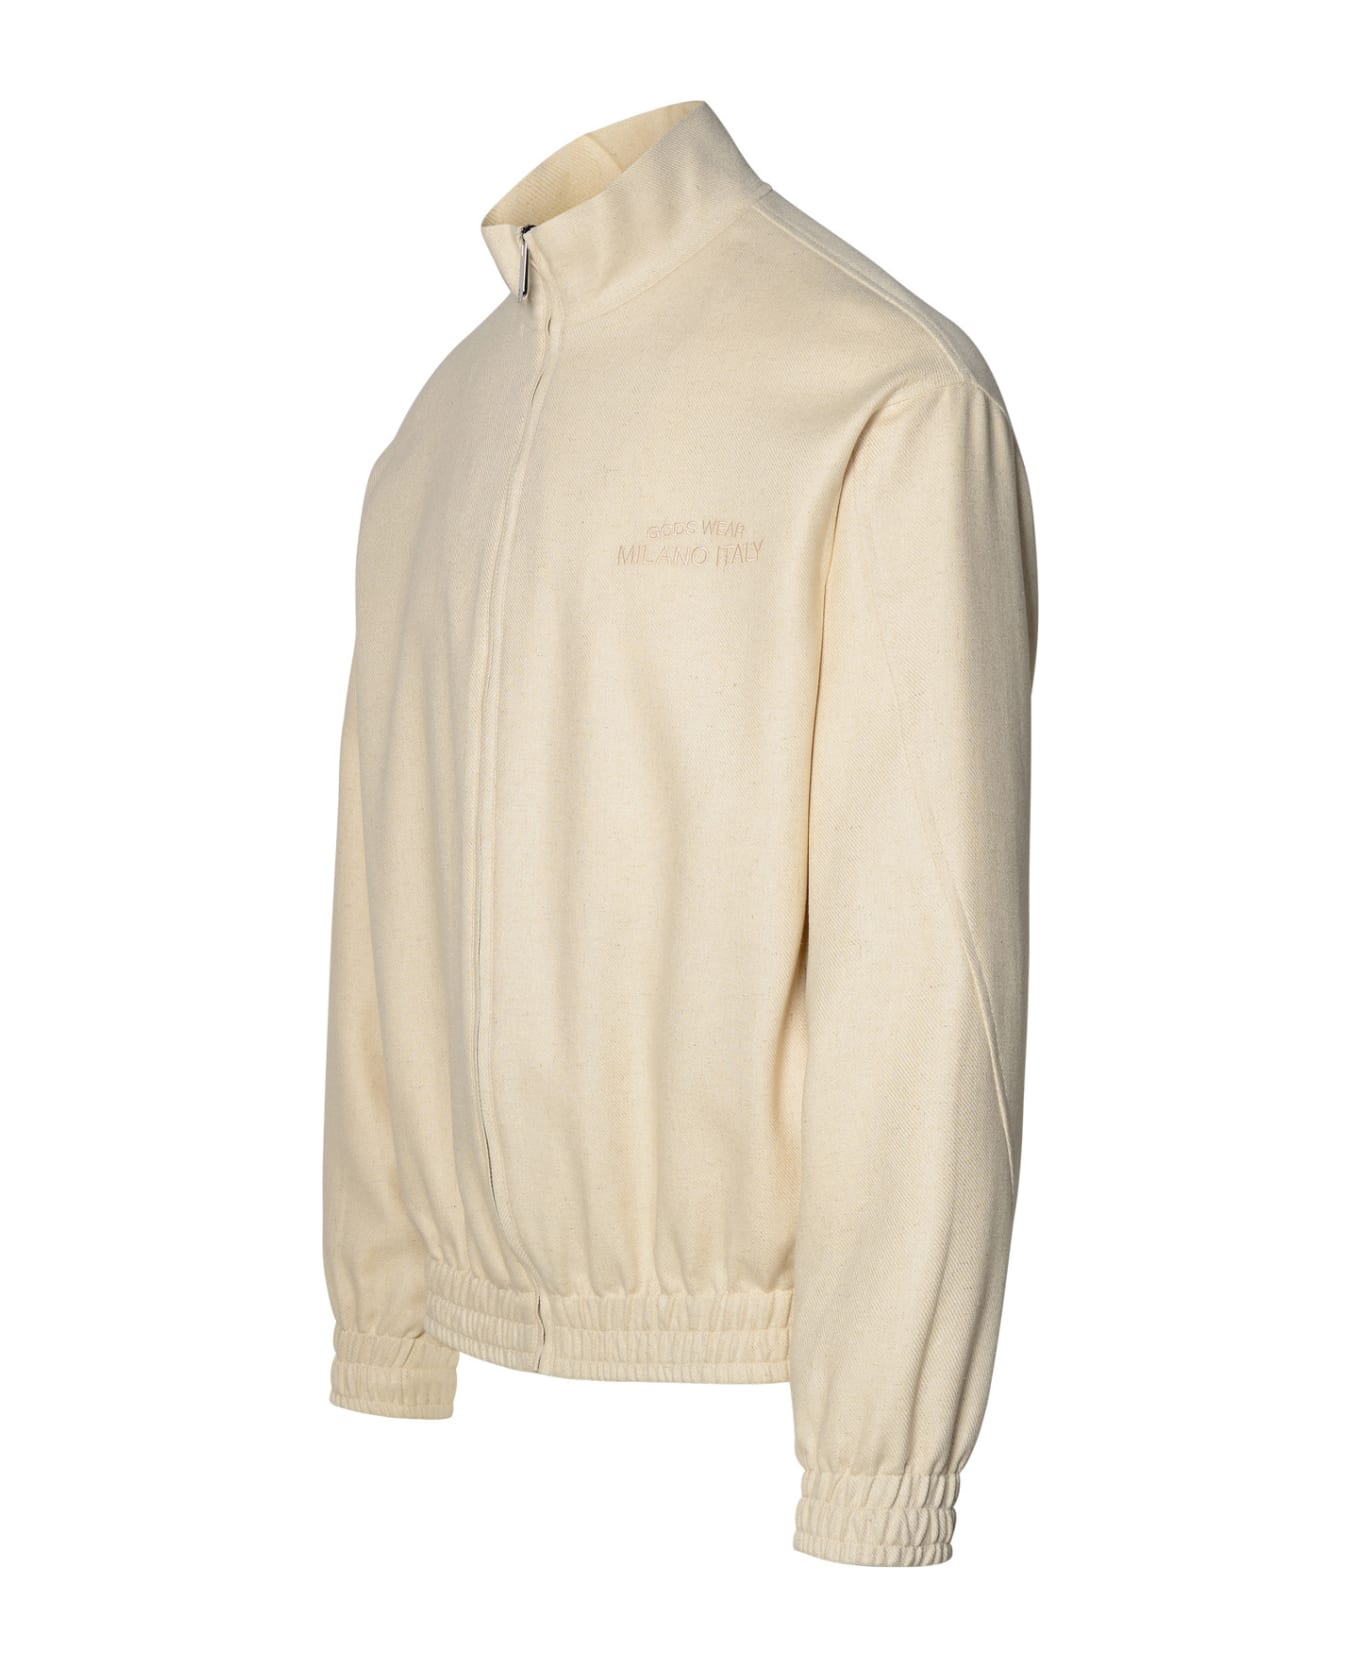 GCDS Ivory Linen Blend Jacket - White ニットウェア